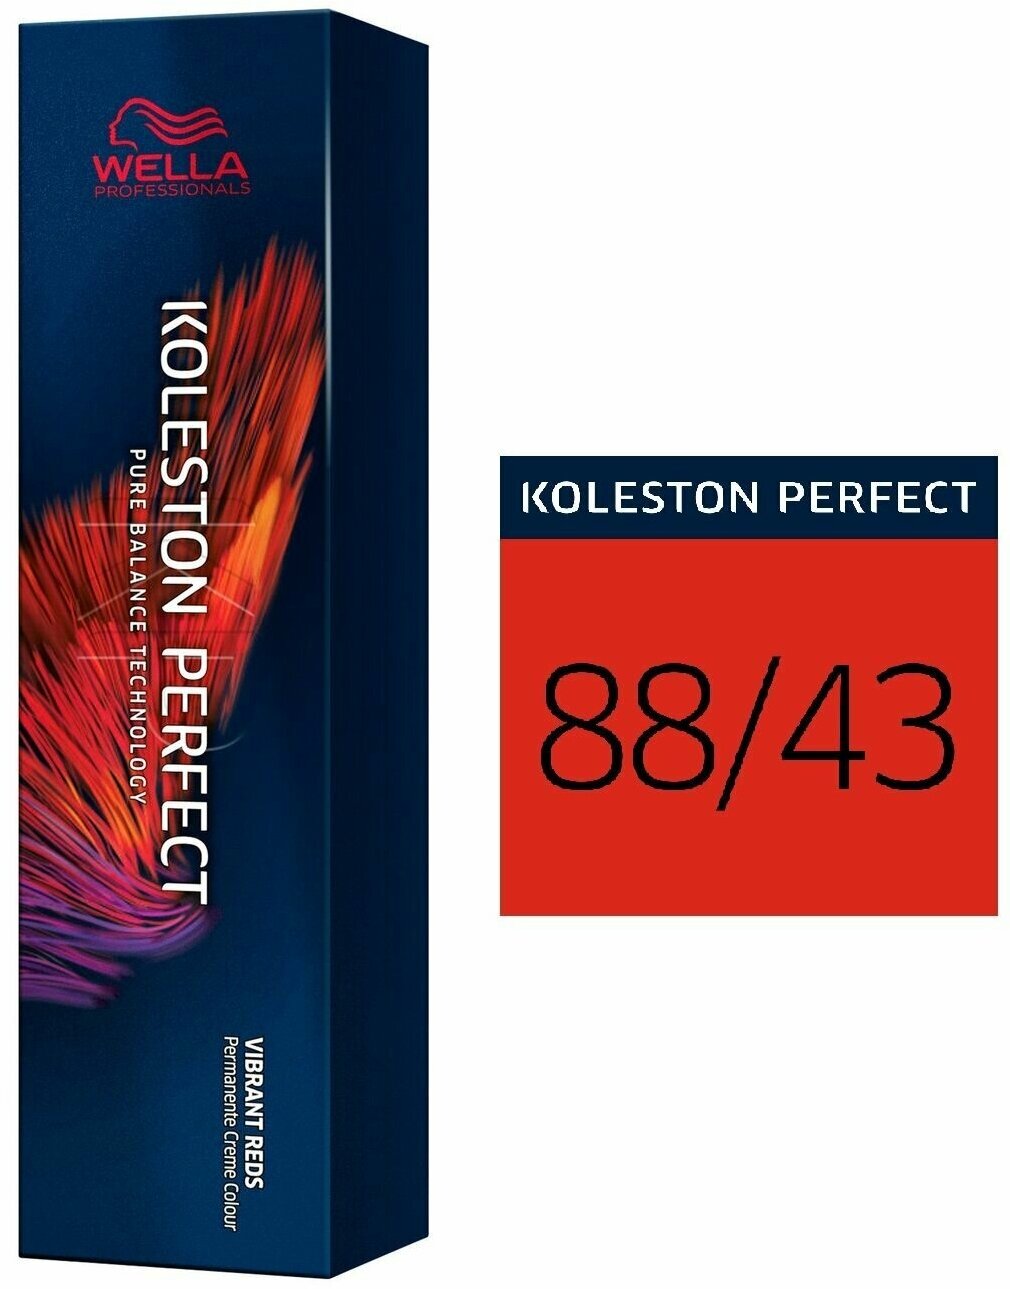 Wella Professionals Краситель Koleston Perfect Яркие красные тона 60 мл, оттенок 66/46, 66/46 Красный рай (Wella Professionals, ) - фото №20